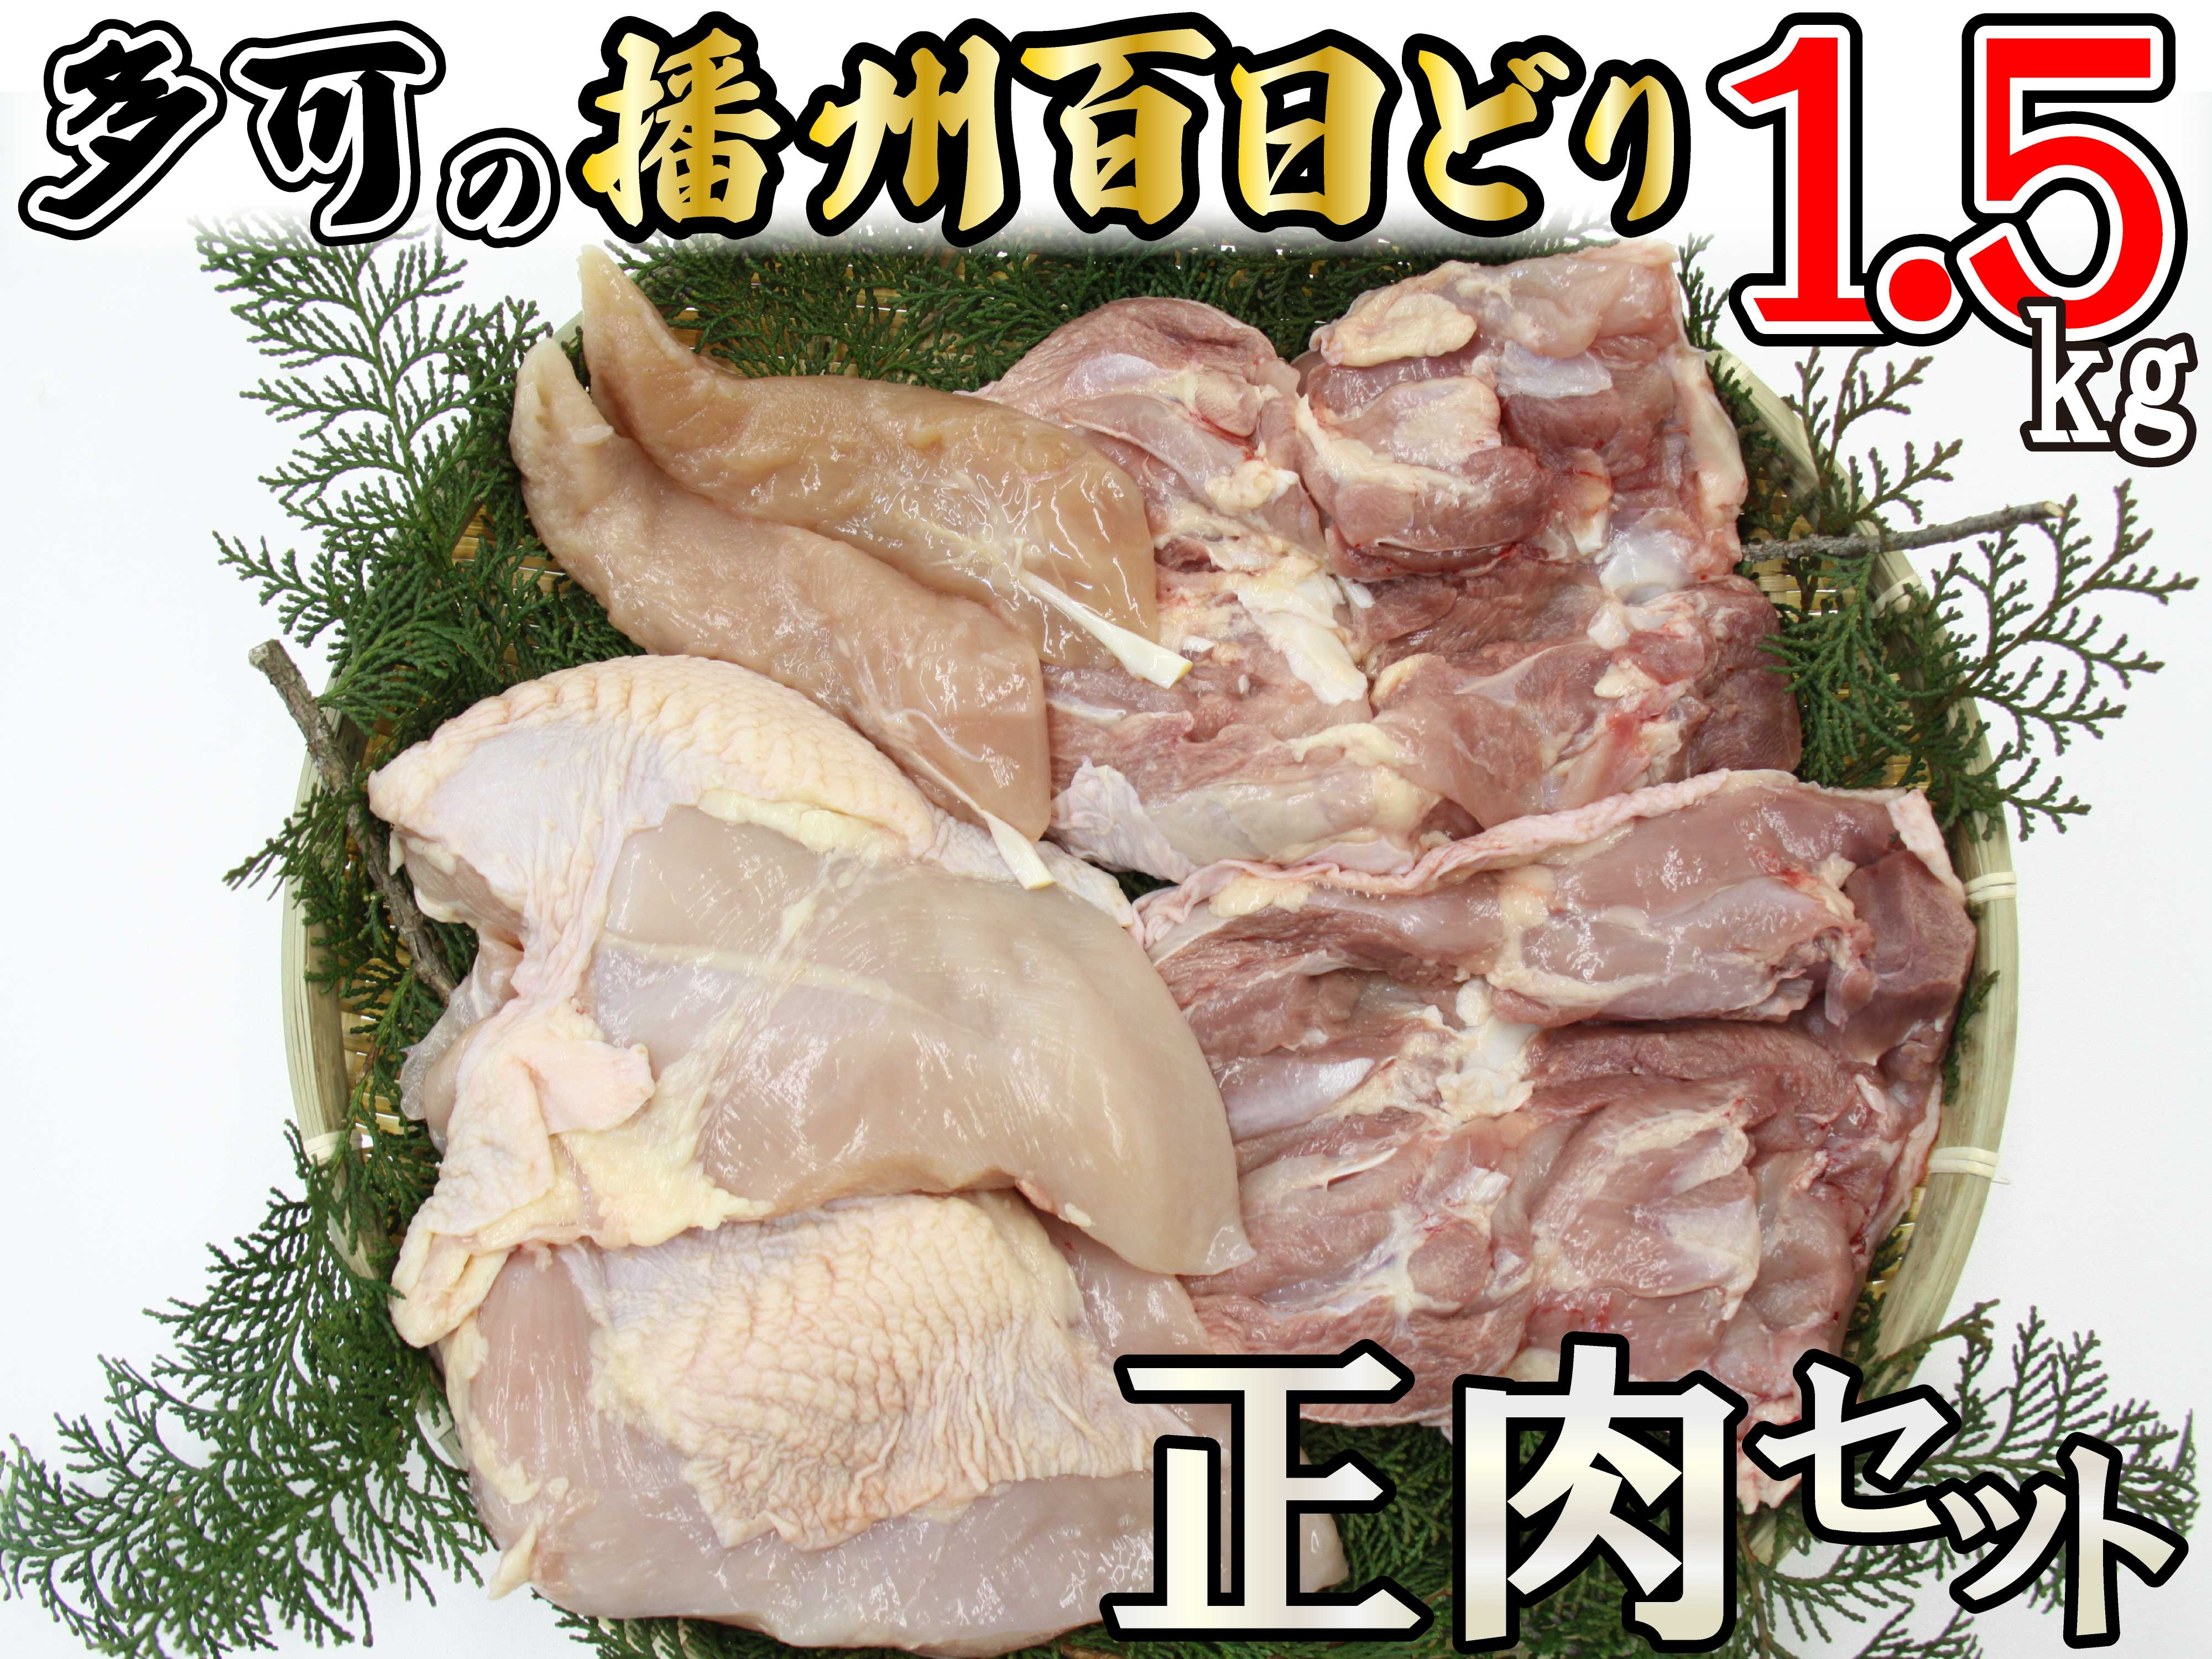 
多可の播州百日どり正肉セット[008] 鶏肉 もも肉 むね肉 ささみ 冷蔵 1.5kg 播州百日どり
